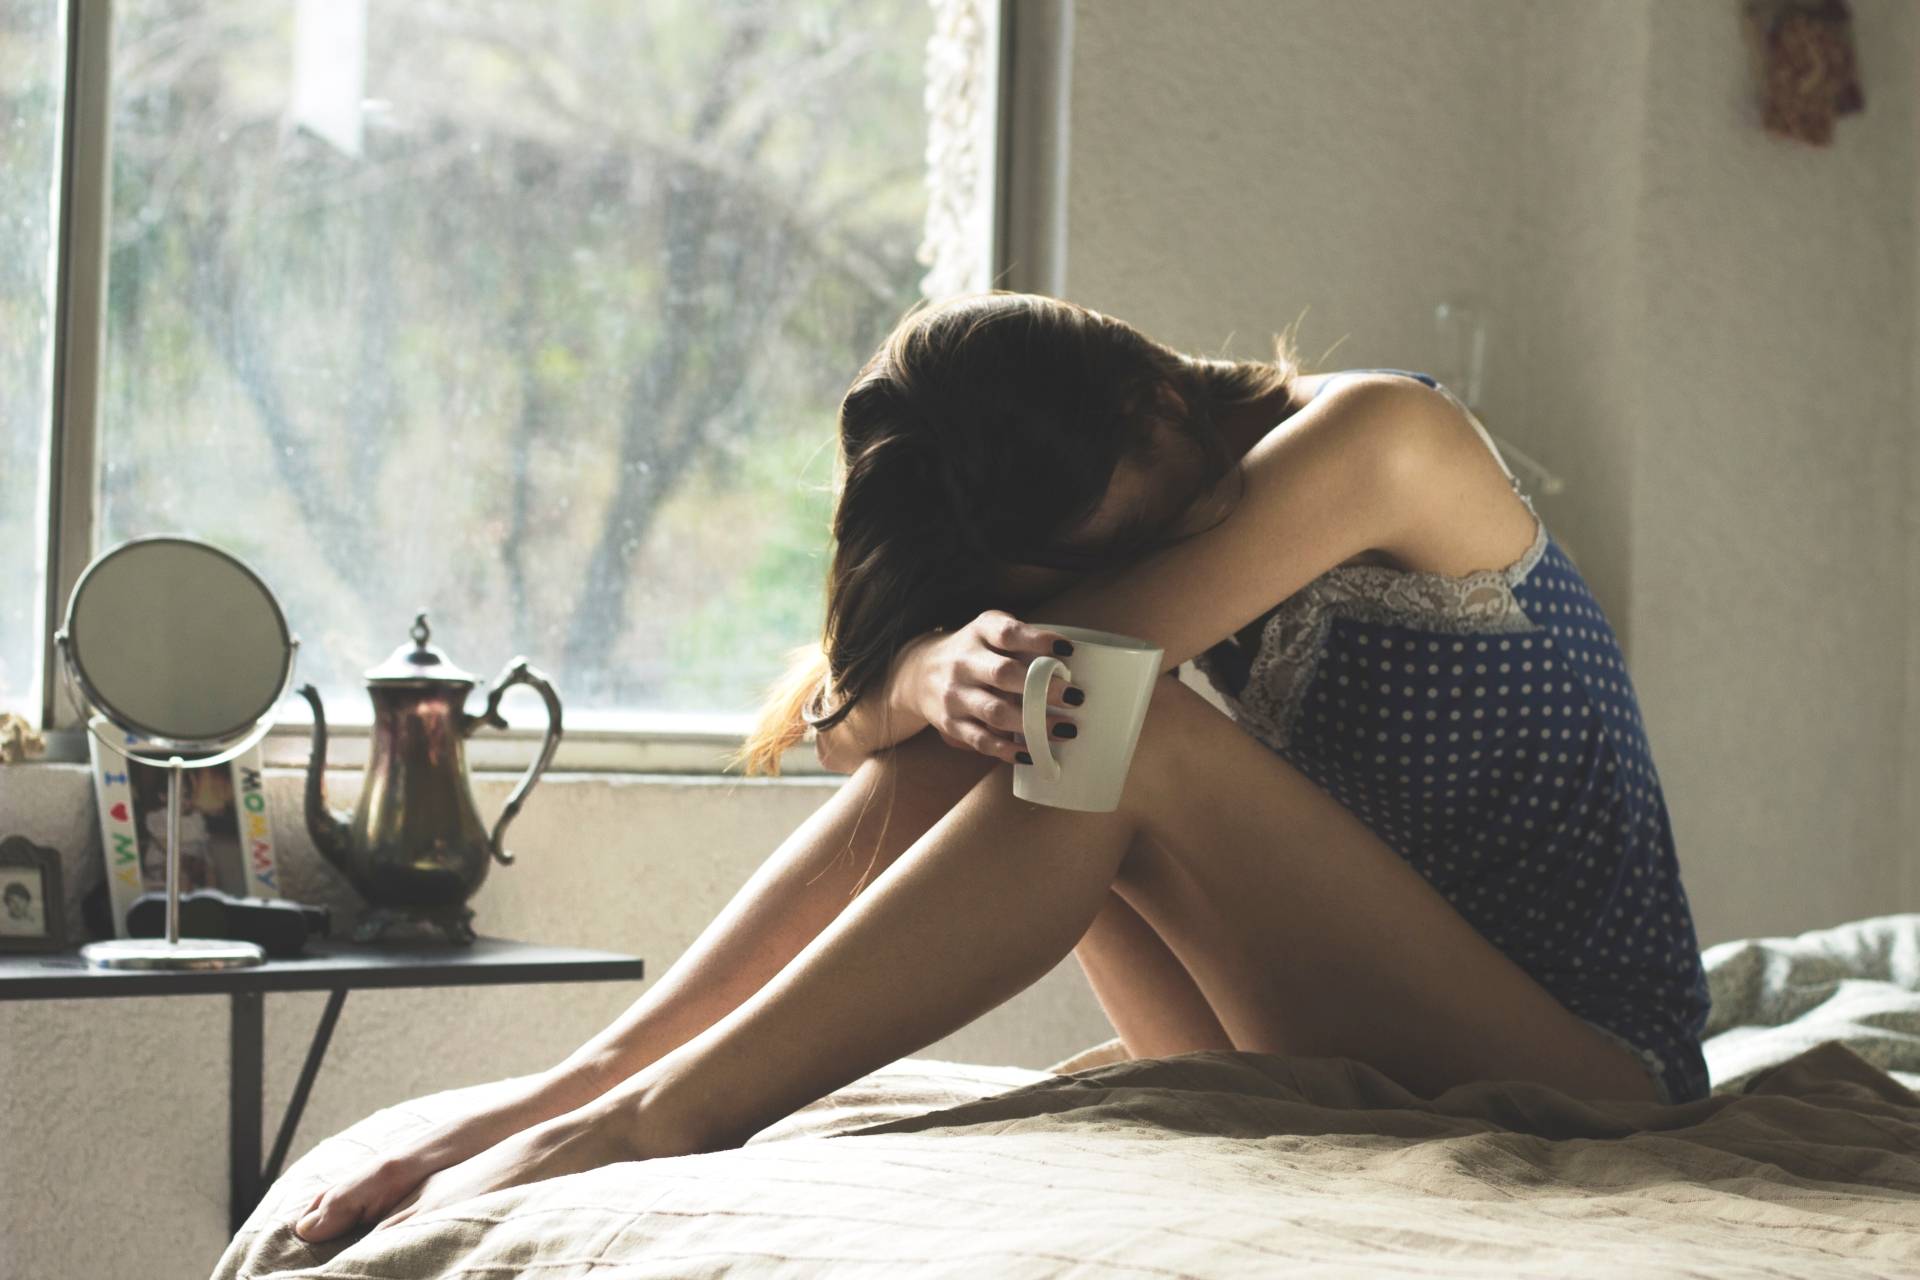 Jak poradzić sobie z traumą? Kobieta w depresji siedzi na łóżku w sypialni i opiera głowę o kolana, w ręku trzyma kubek.